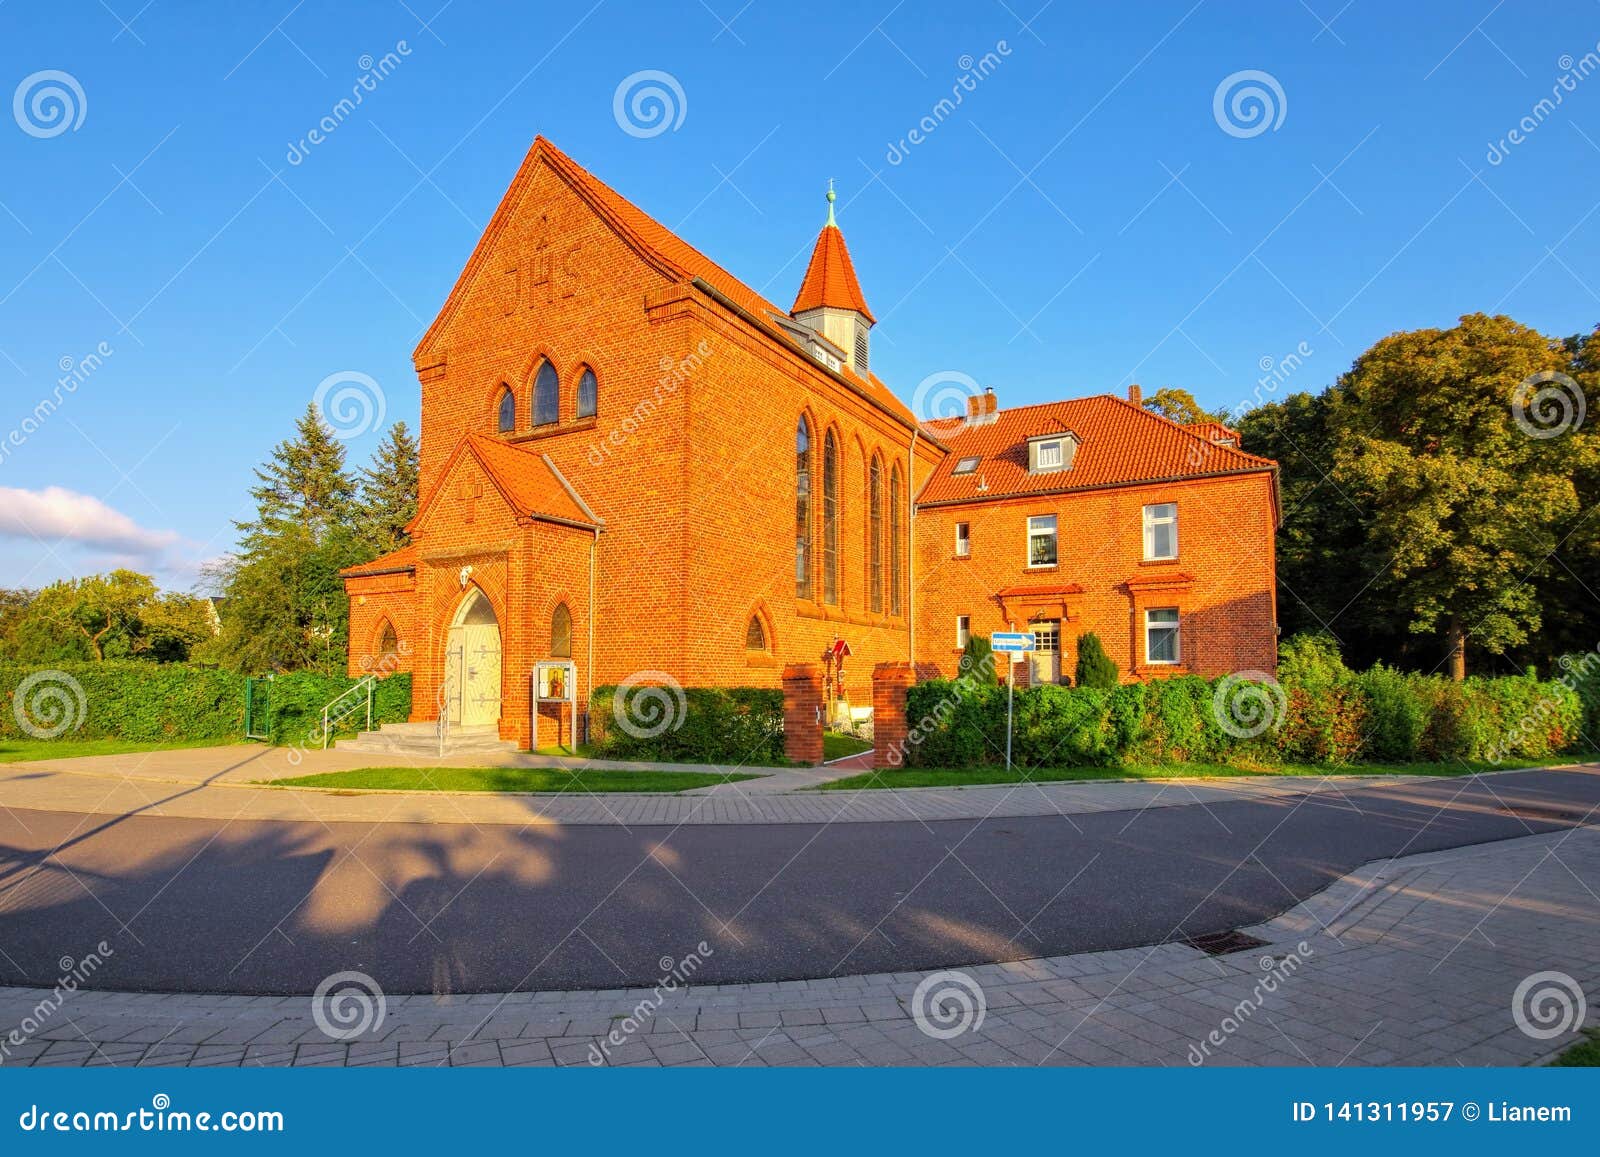 barth church saint maria, an old town on the bodden